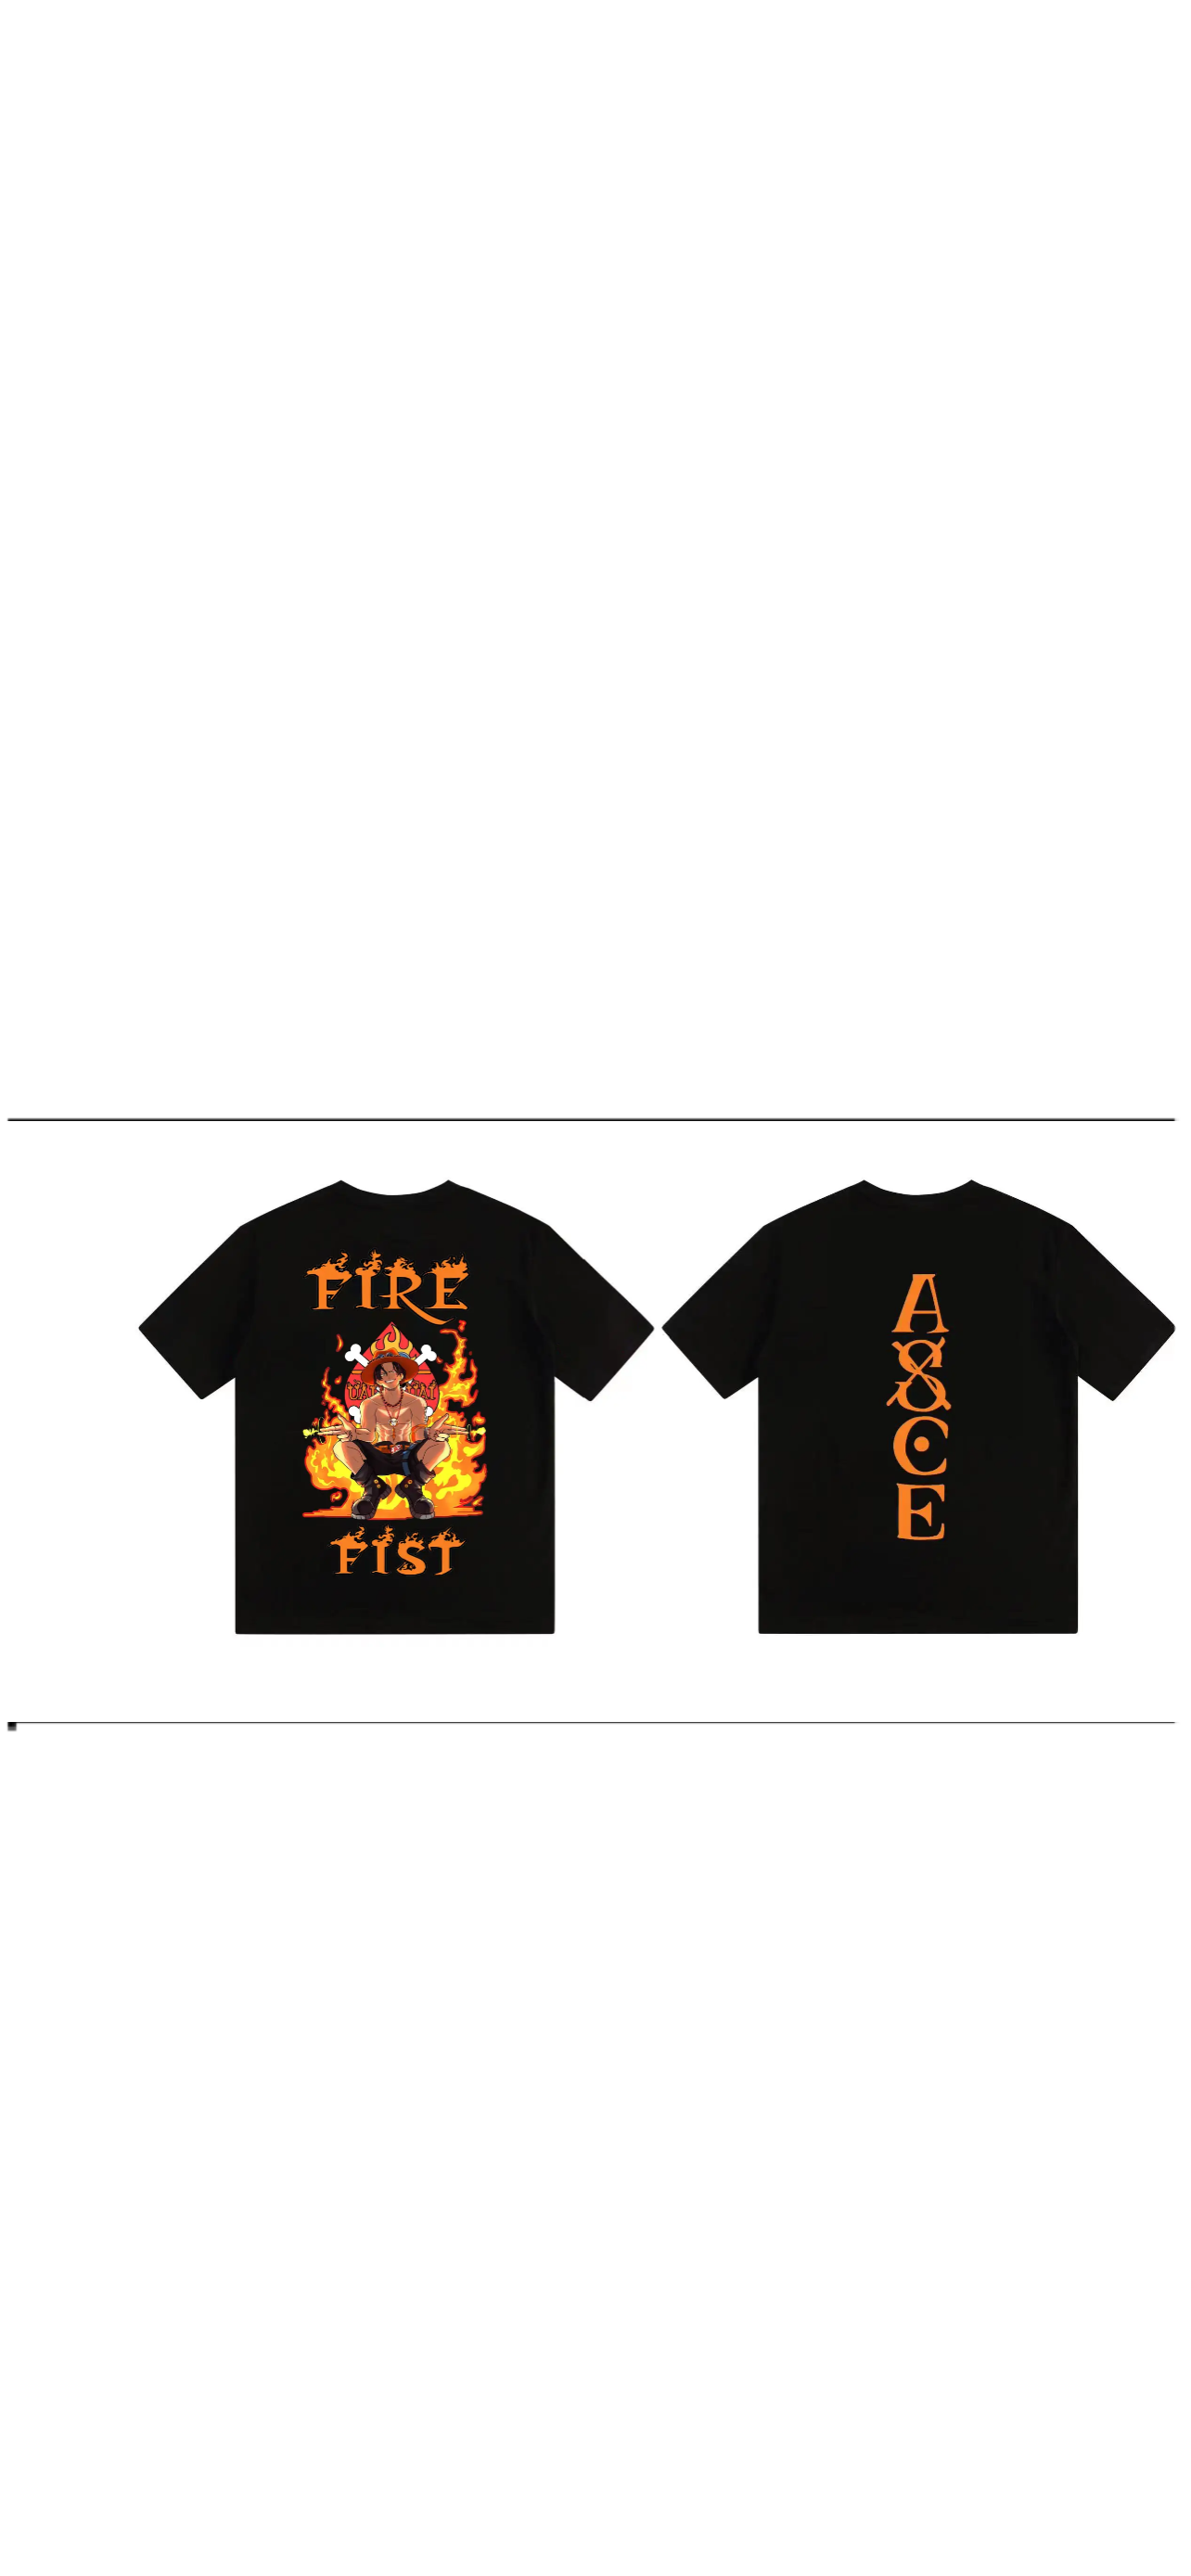 Fire Fist Ace T Shirt